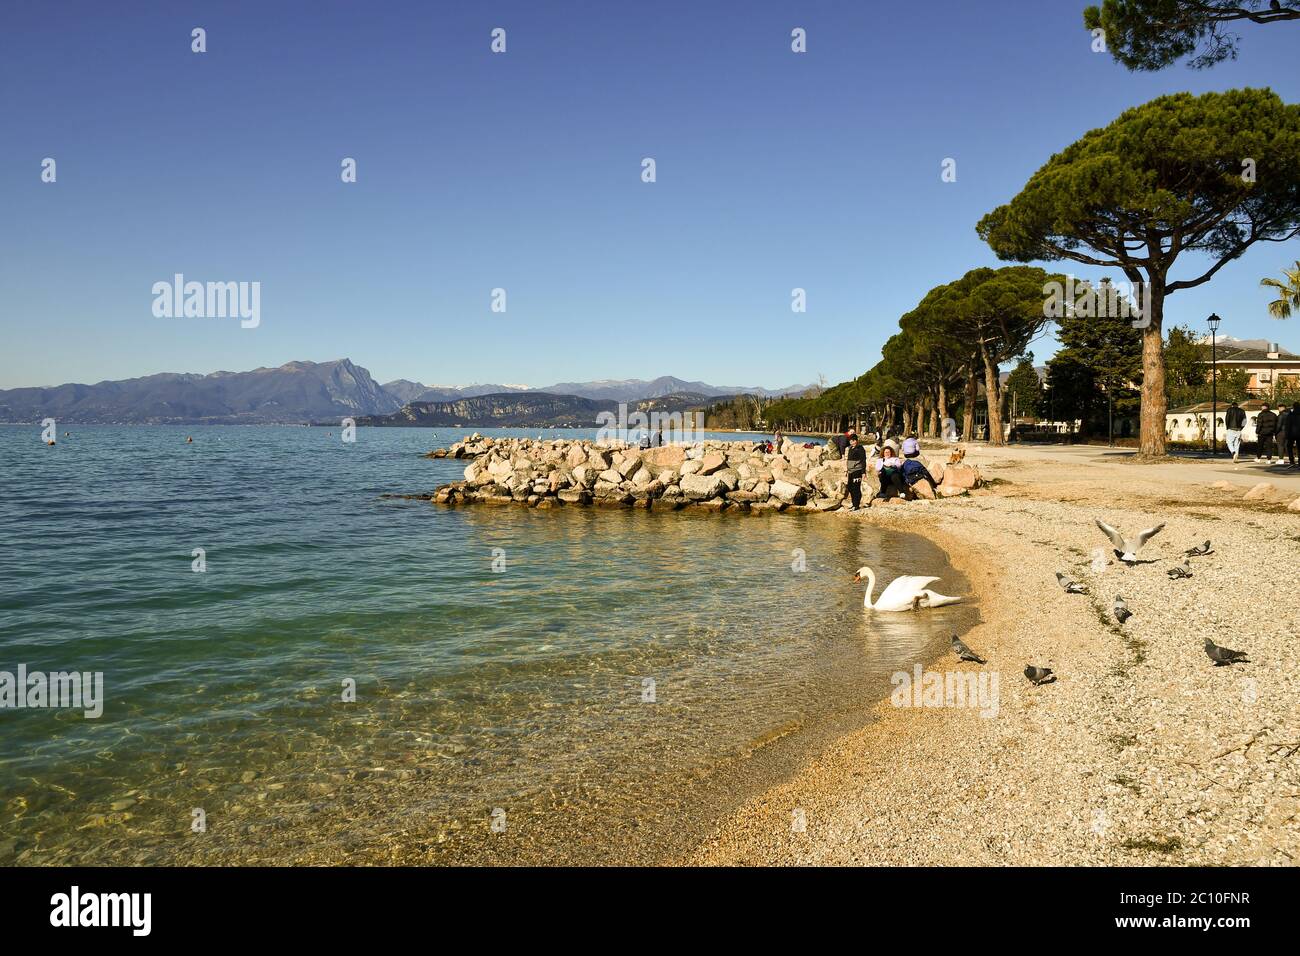 Un cygne au bord de l'eau de la plage de sable sur les rives du lac de Garde avec la côte montagneuse en arrière-plan, Lazise, Vérone, Vénétie, Italie Banque D'Images